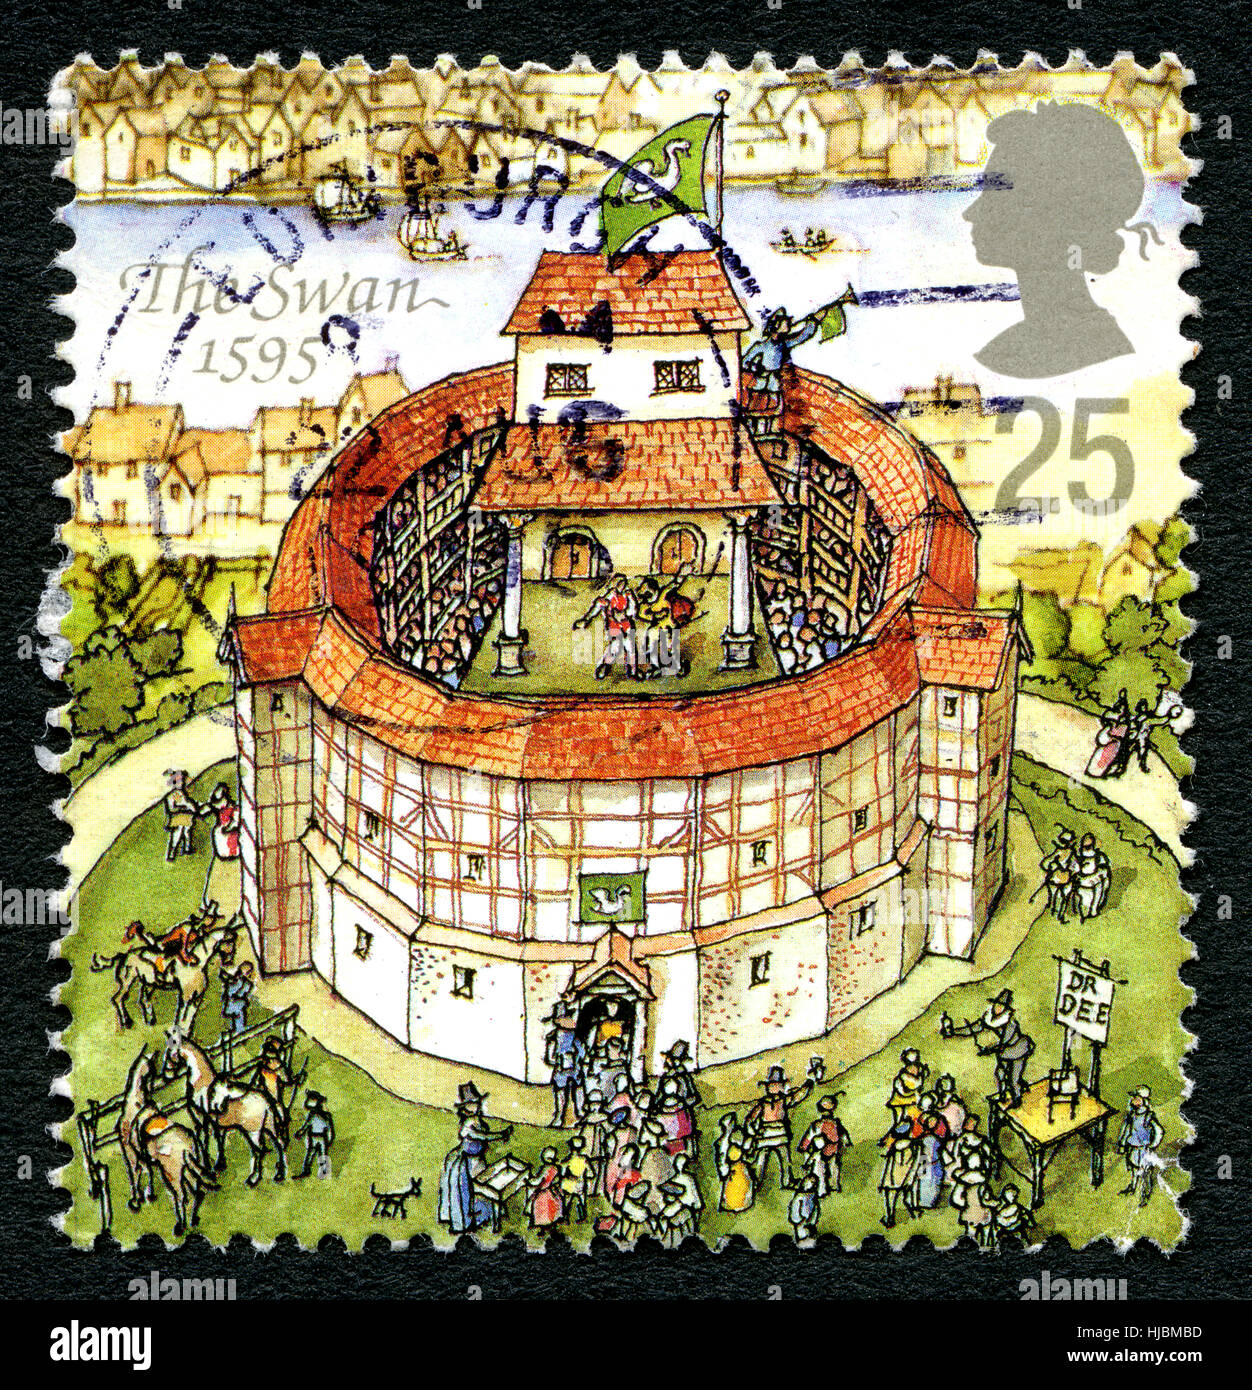 Grande-bretagne - circa 1995 : un timbre-poste utilisé par le Royaume-Uni, qui représente une illustration de la Swan Theatre de Londres, vers 1995. Banque D'Images